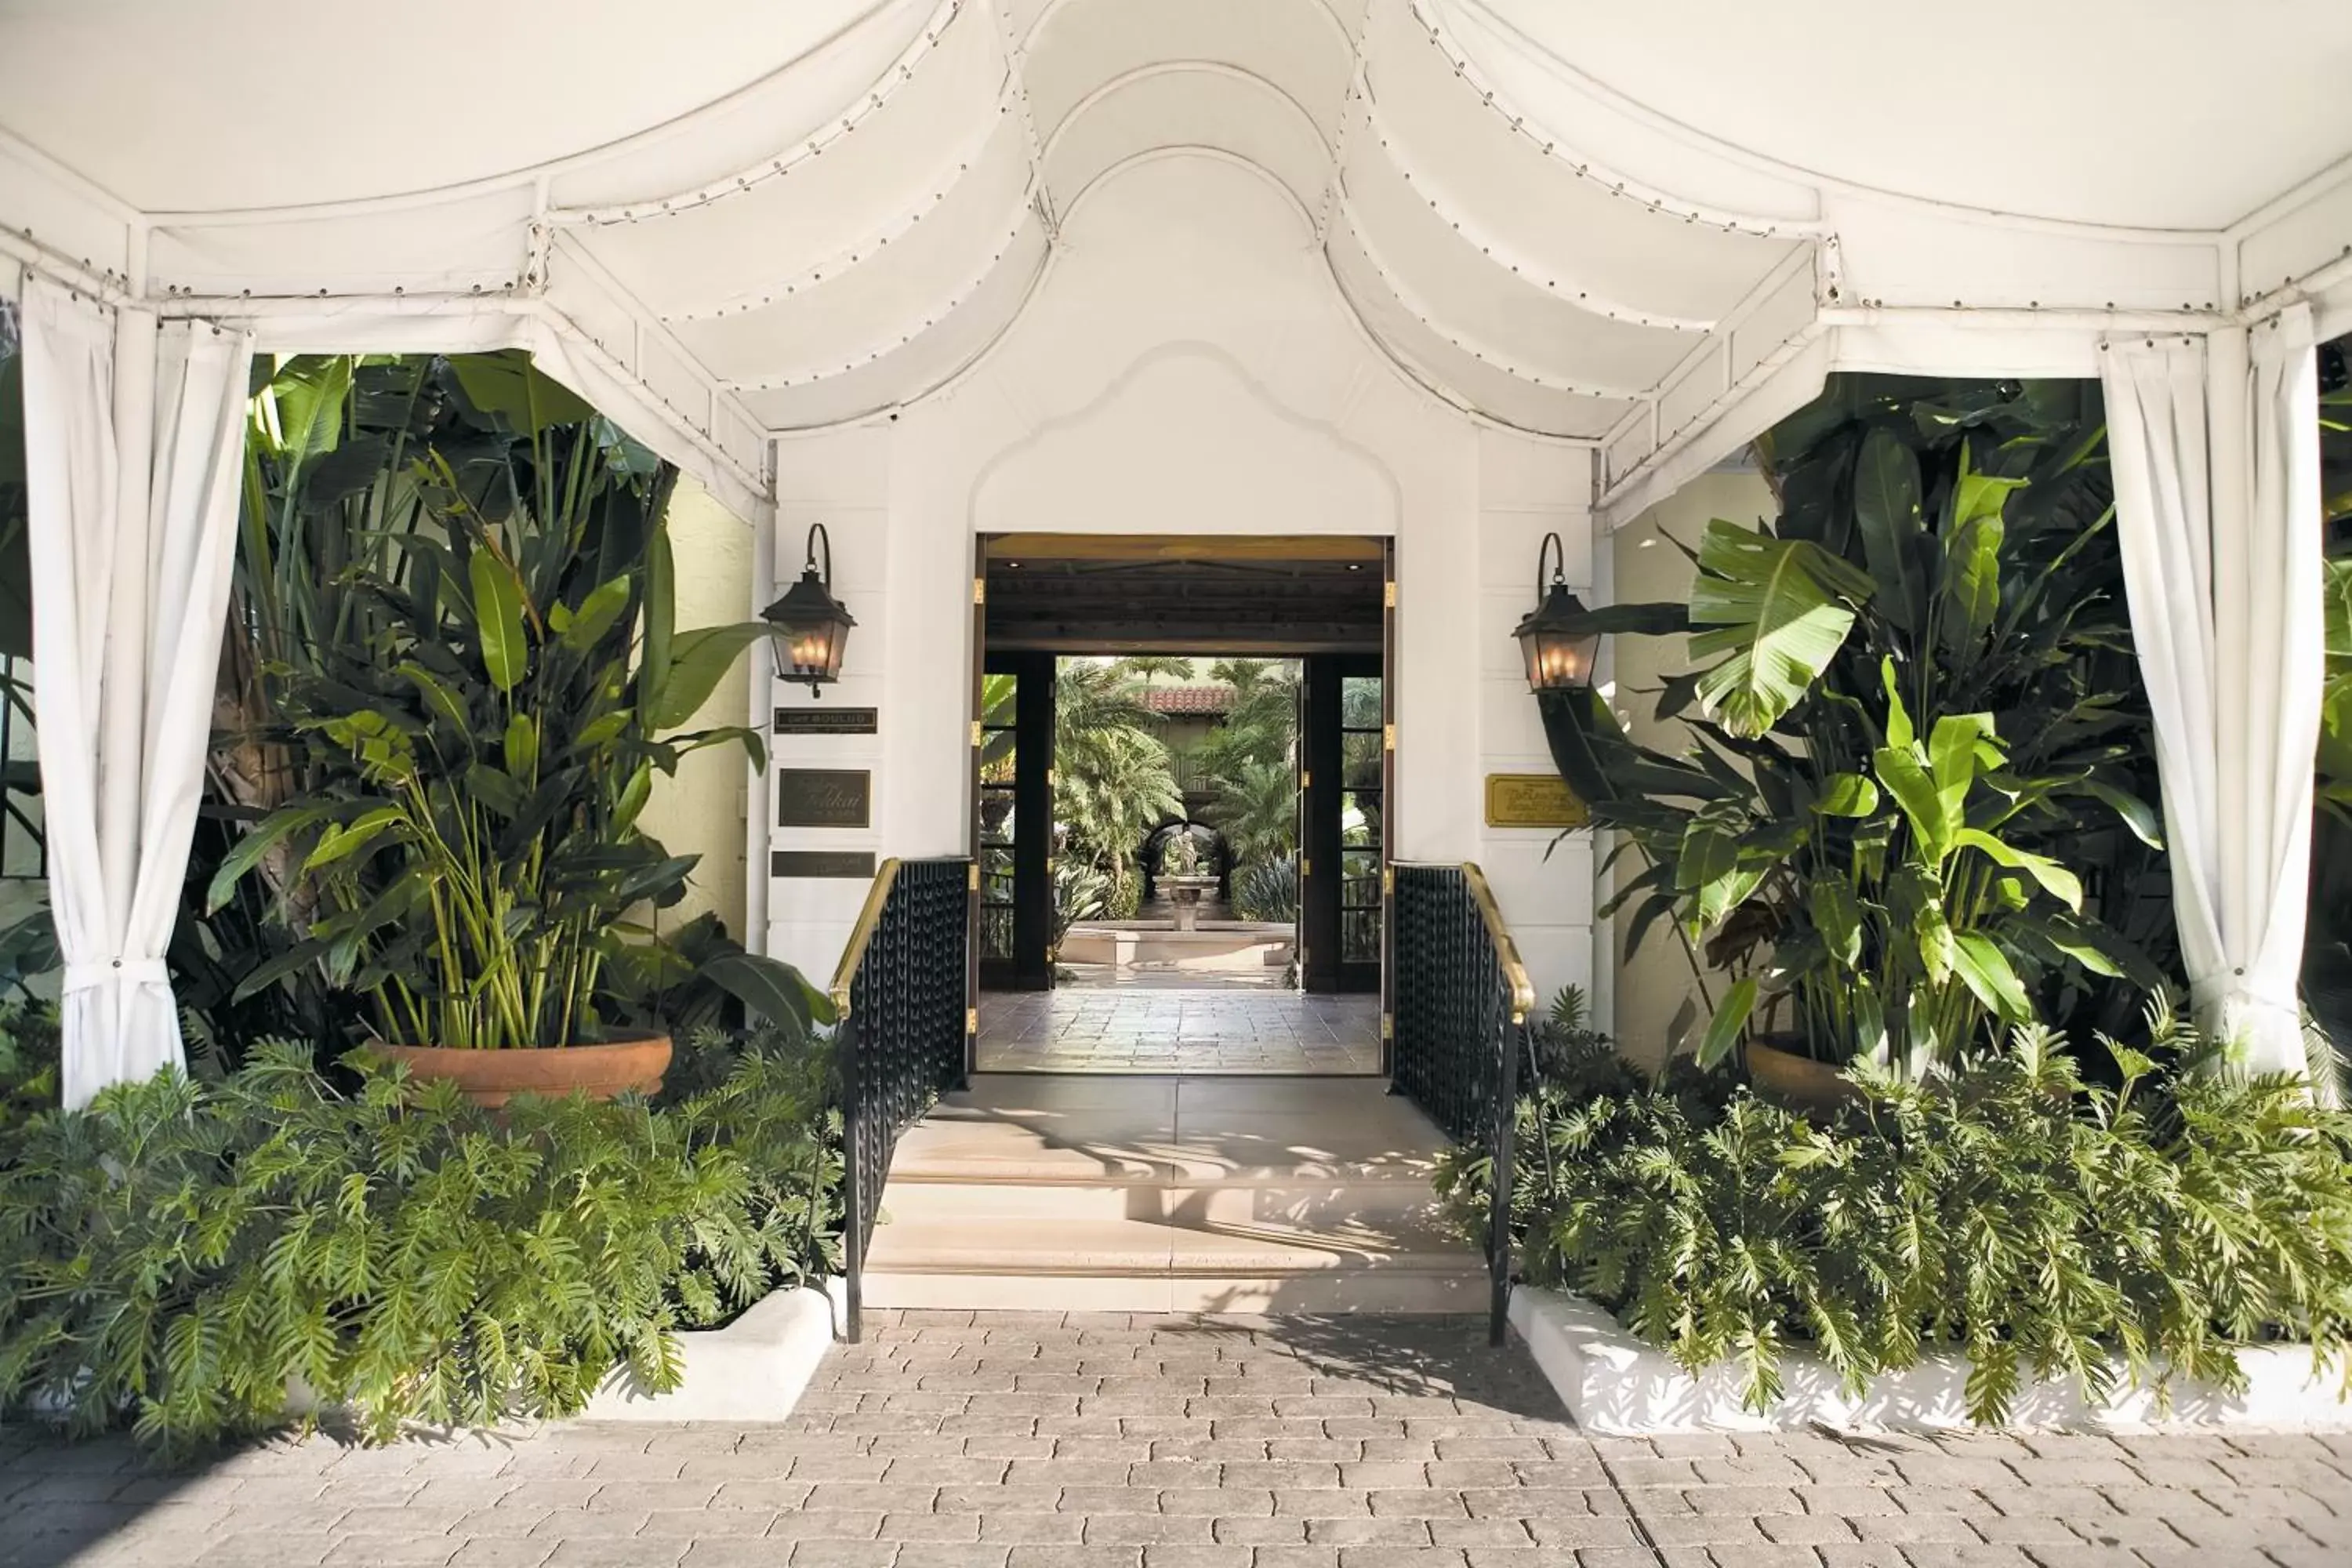 Facade/entrance in The Brazilian Court Hotel